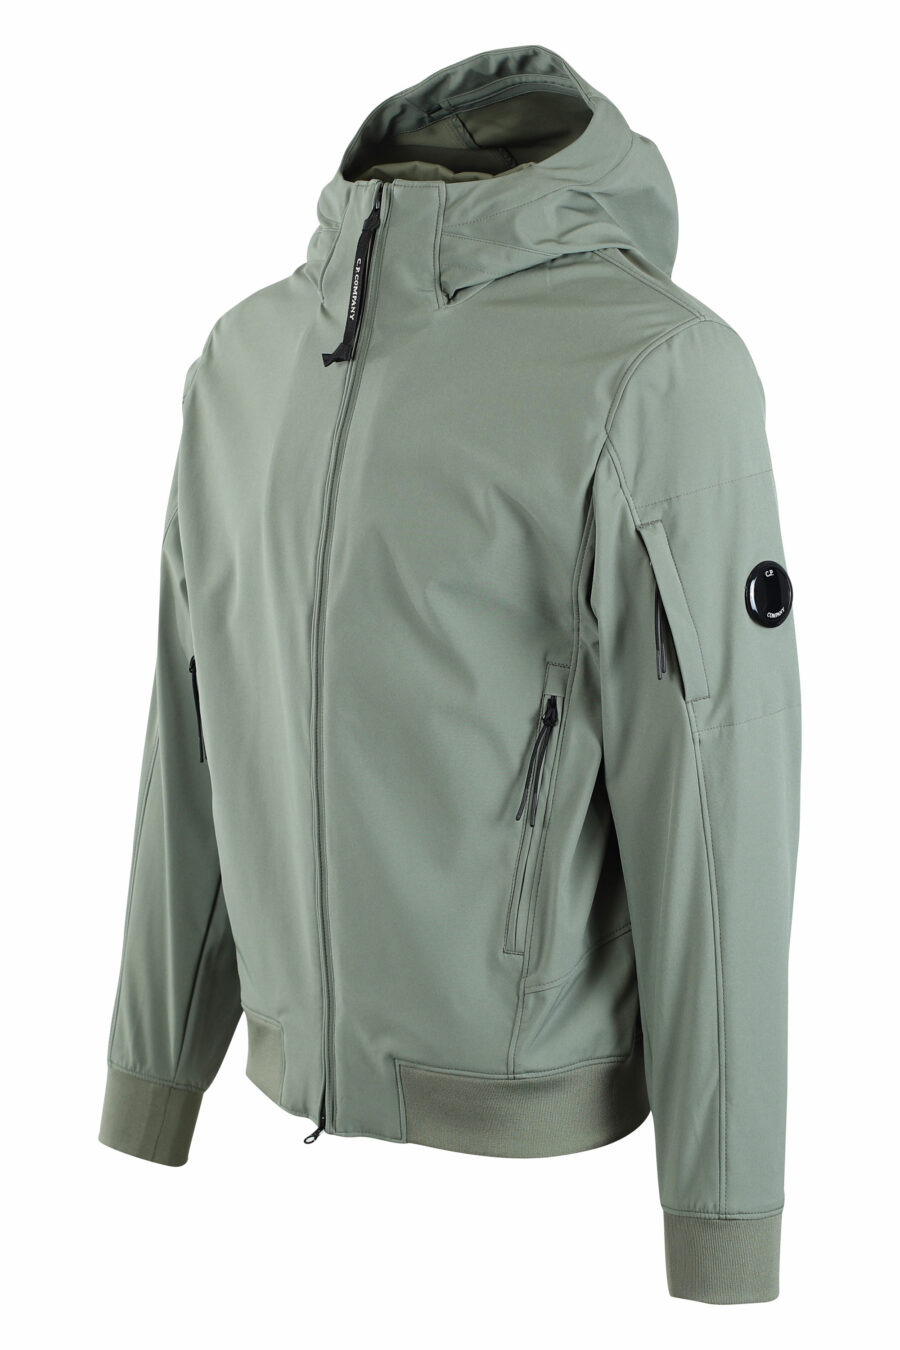 Veste vert militaire avec capuche et poche latérale avec mini-logo circulaire - IMG 2685